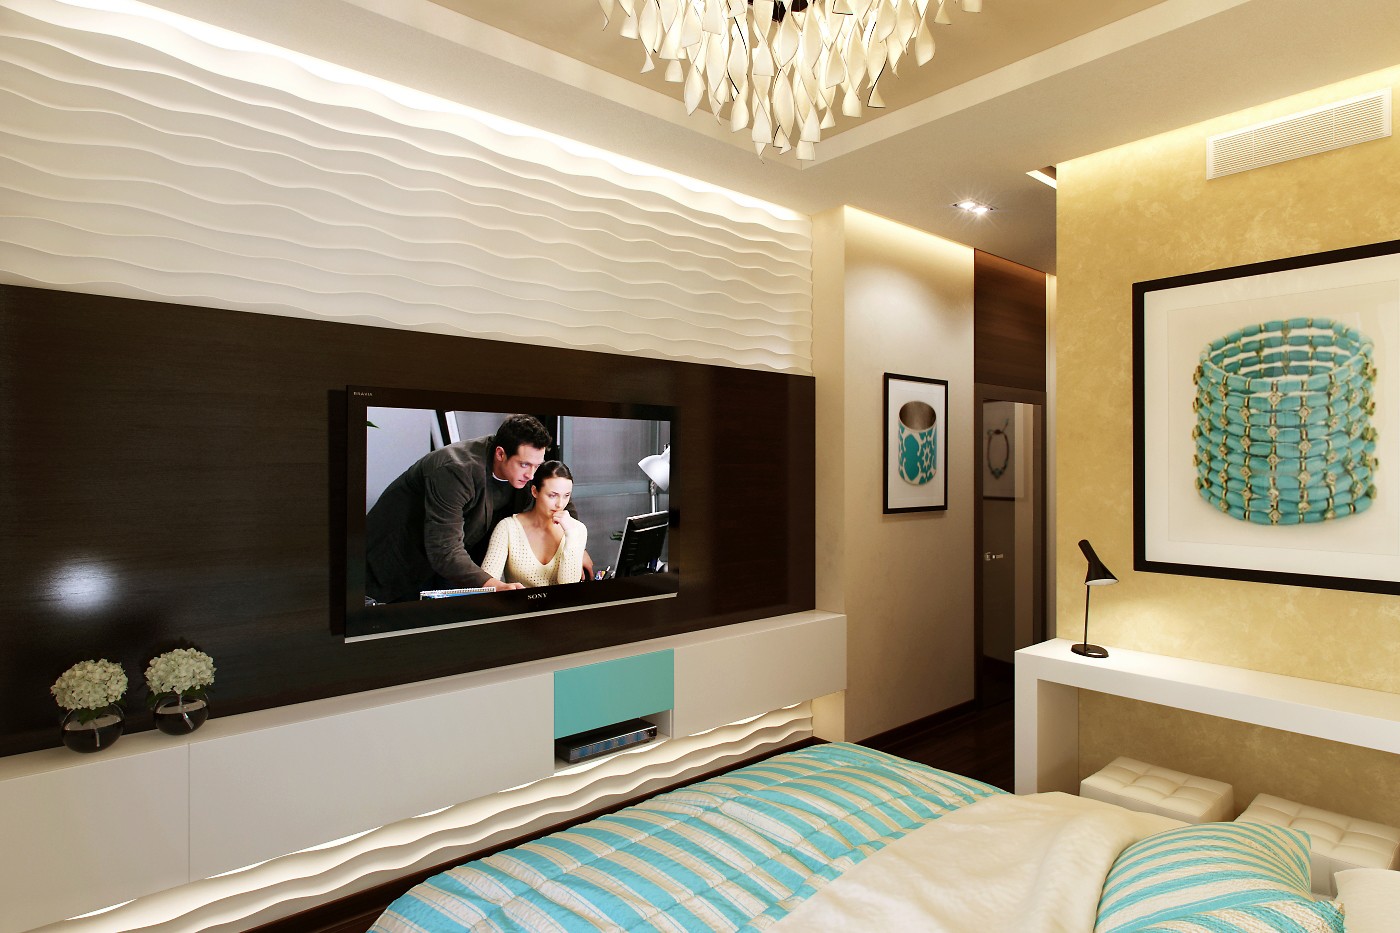 Телевизор в маленькой комнате. Телевизор на стене. Телевизор в спальне. Телевизор в спальне на стене. Телевизор в интерьере.